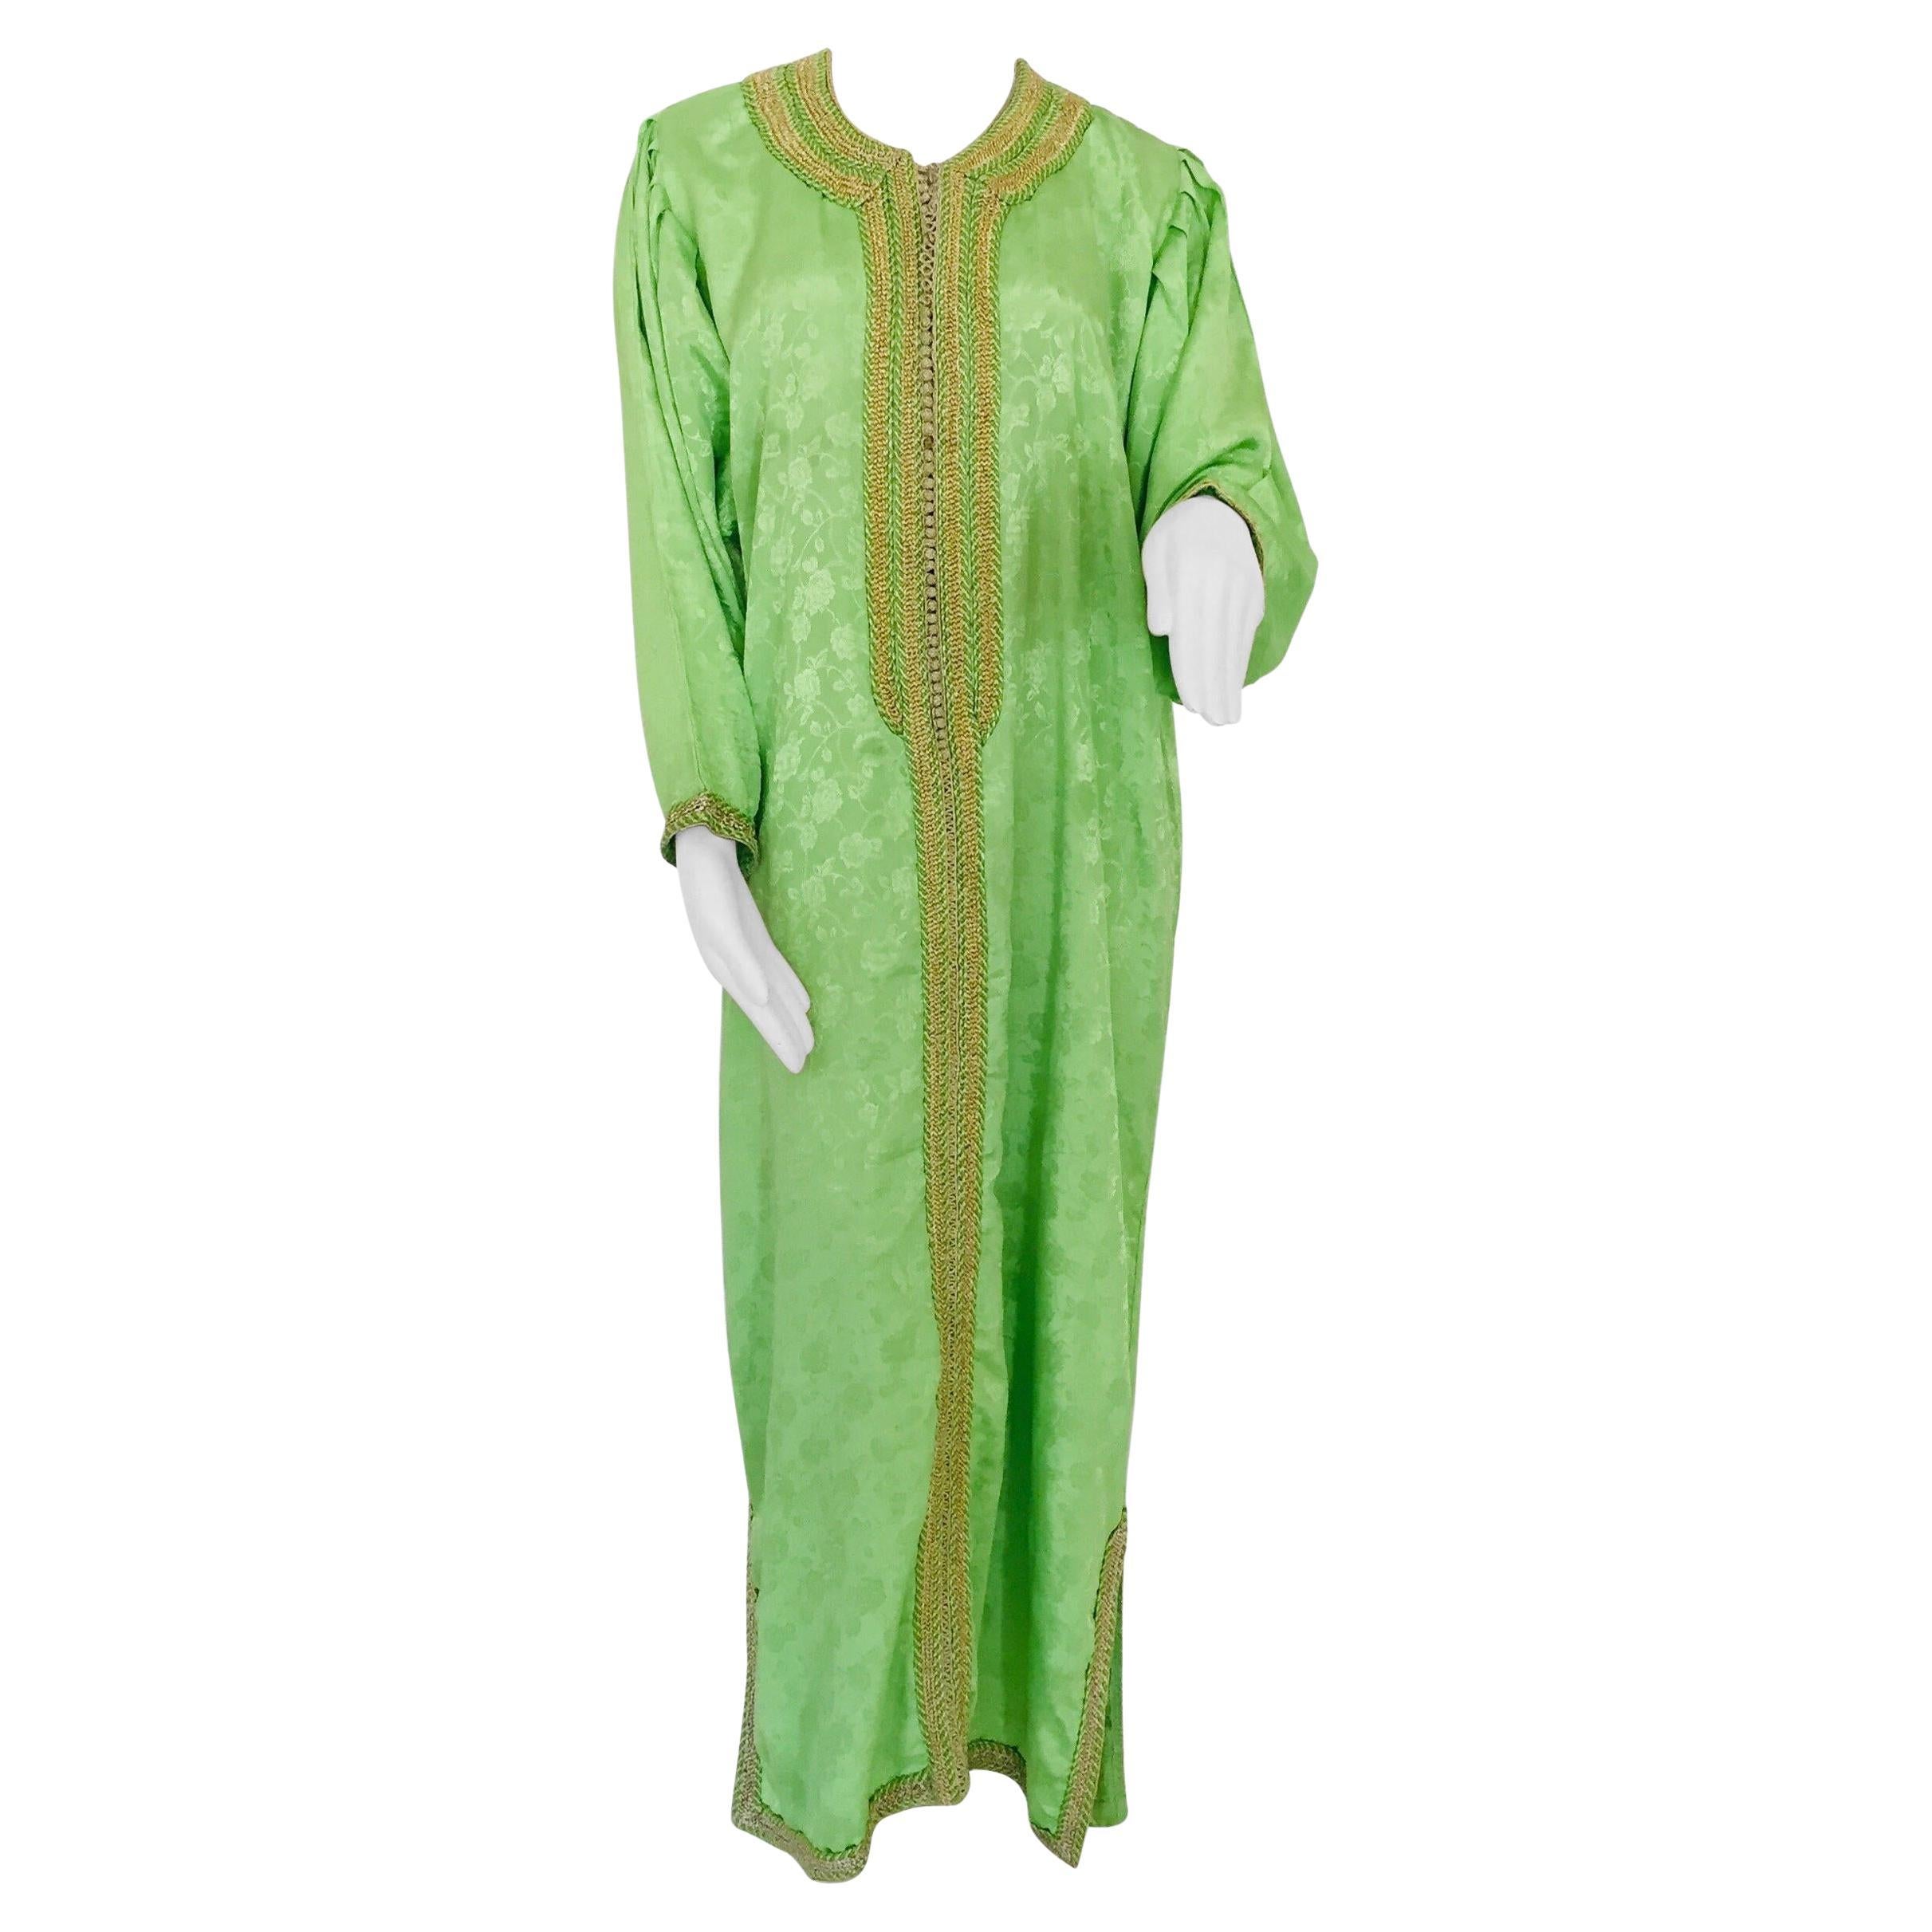 Élégant caftan marocain vert et or brodé de motifs mauresques